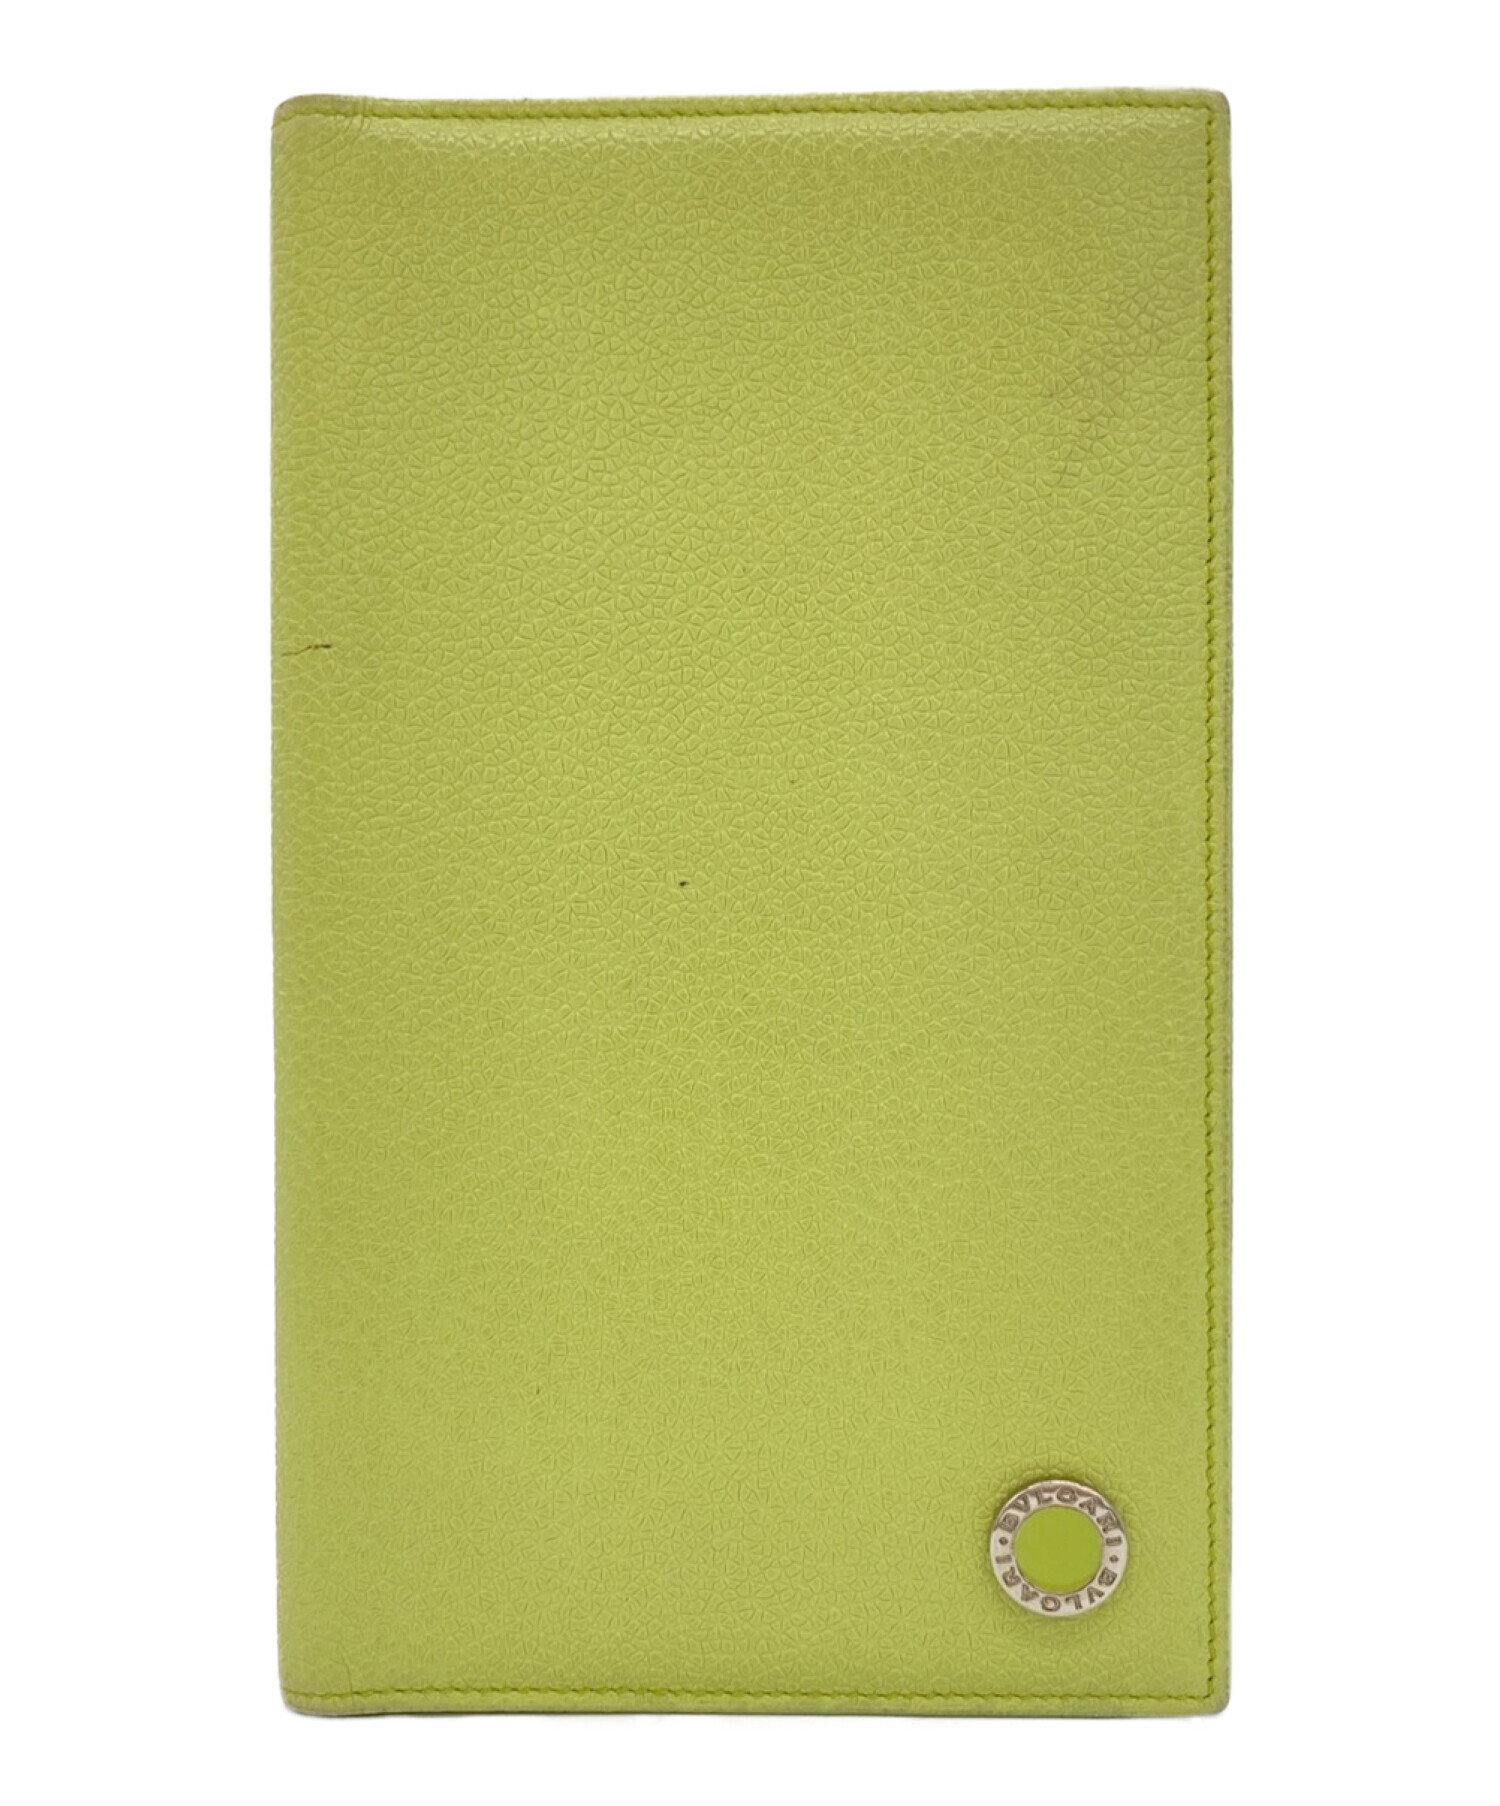 BVLGARI (ブルガリ) 手帳カバー 黄緑